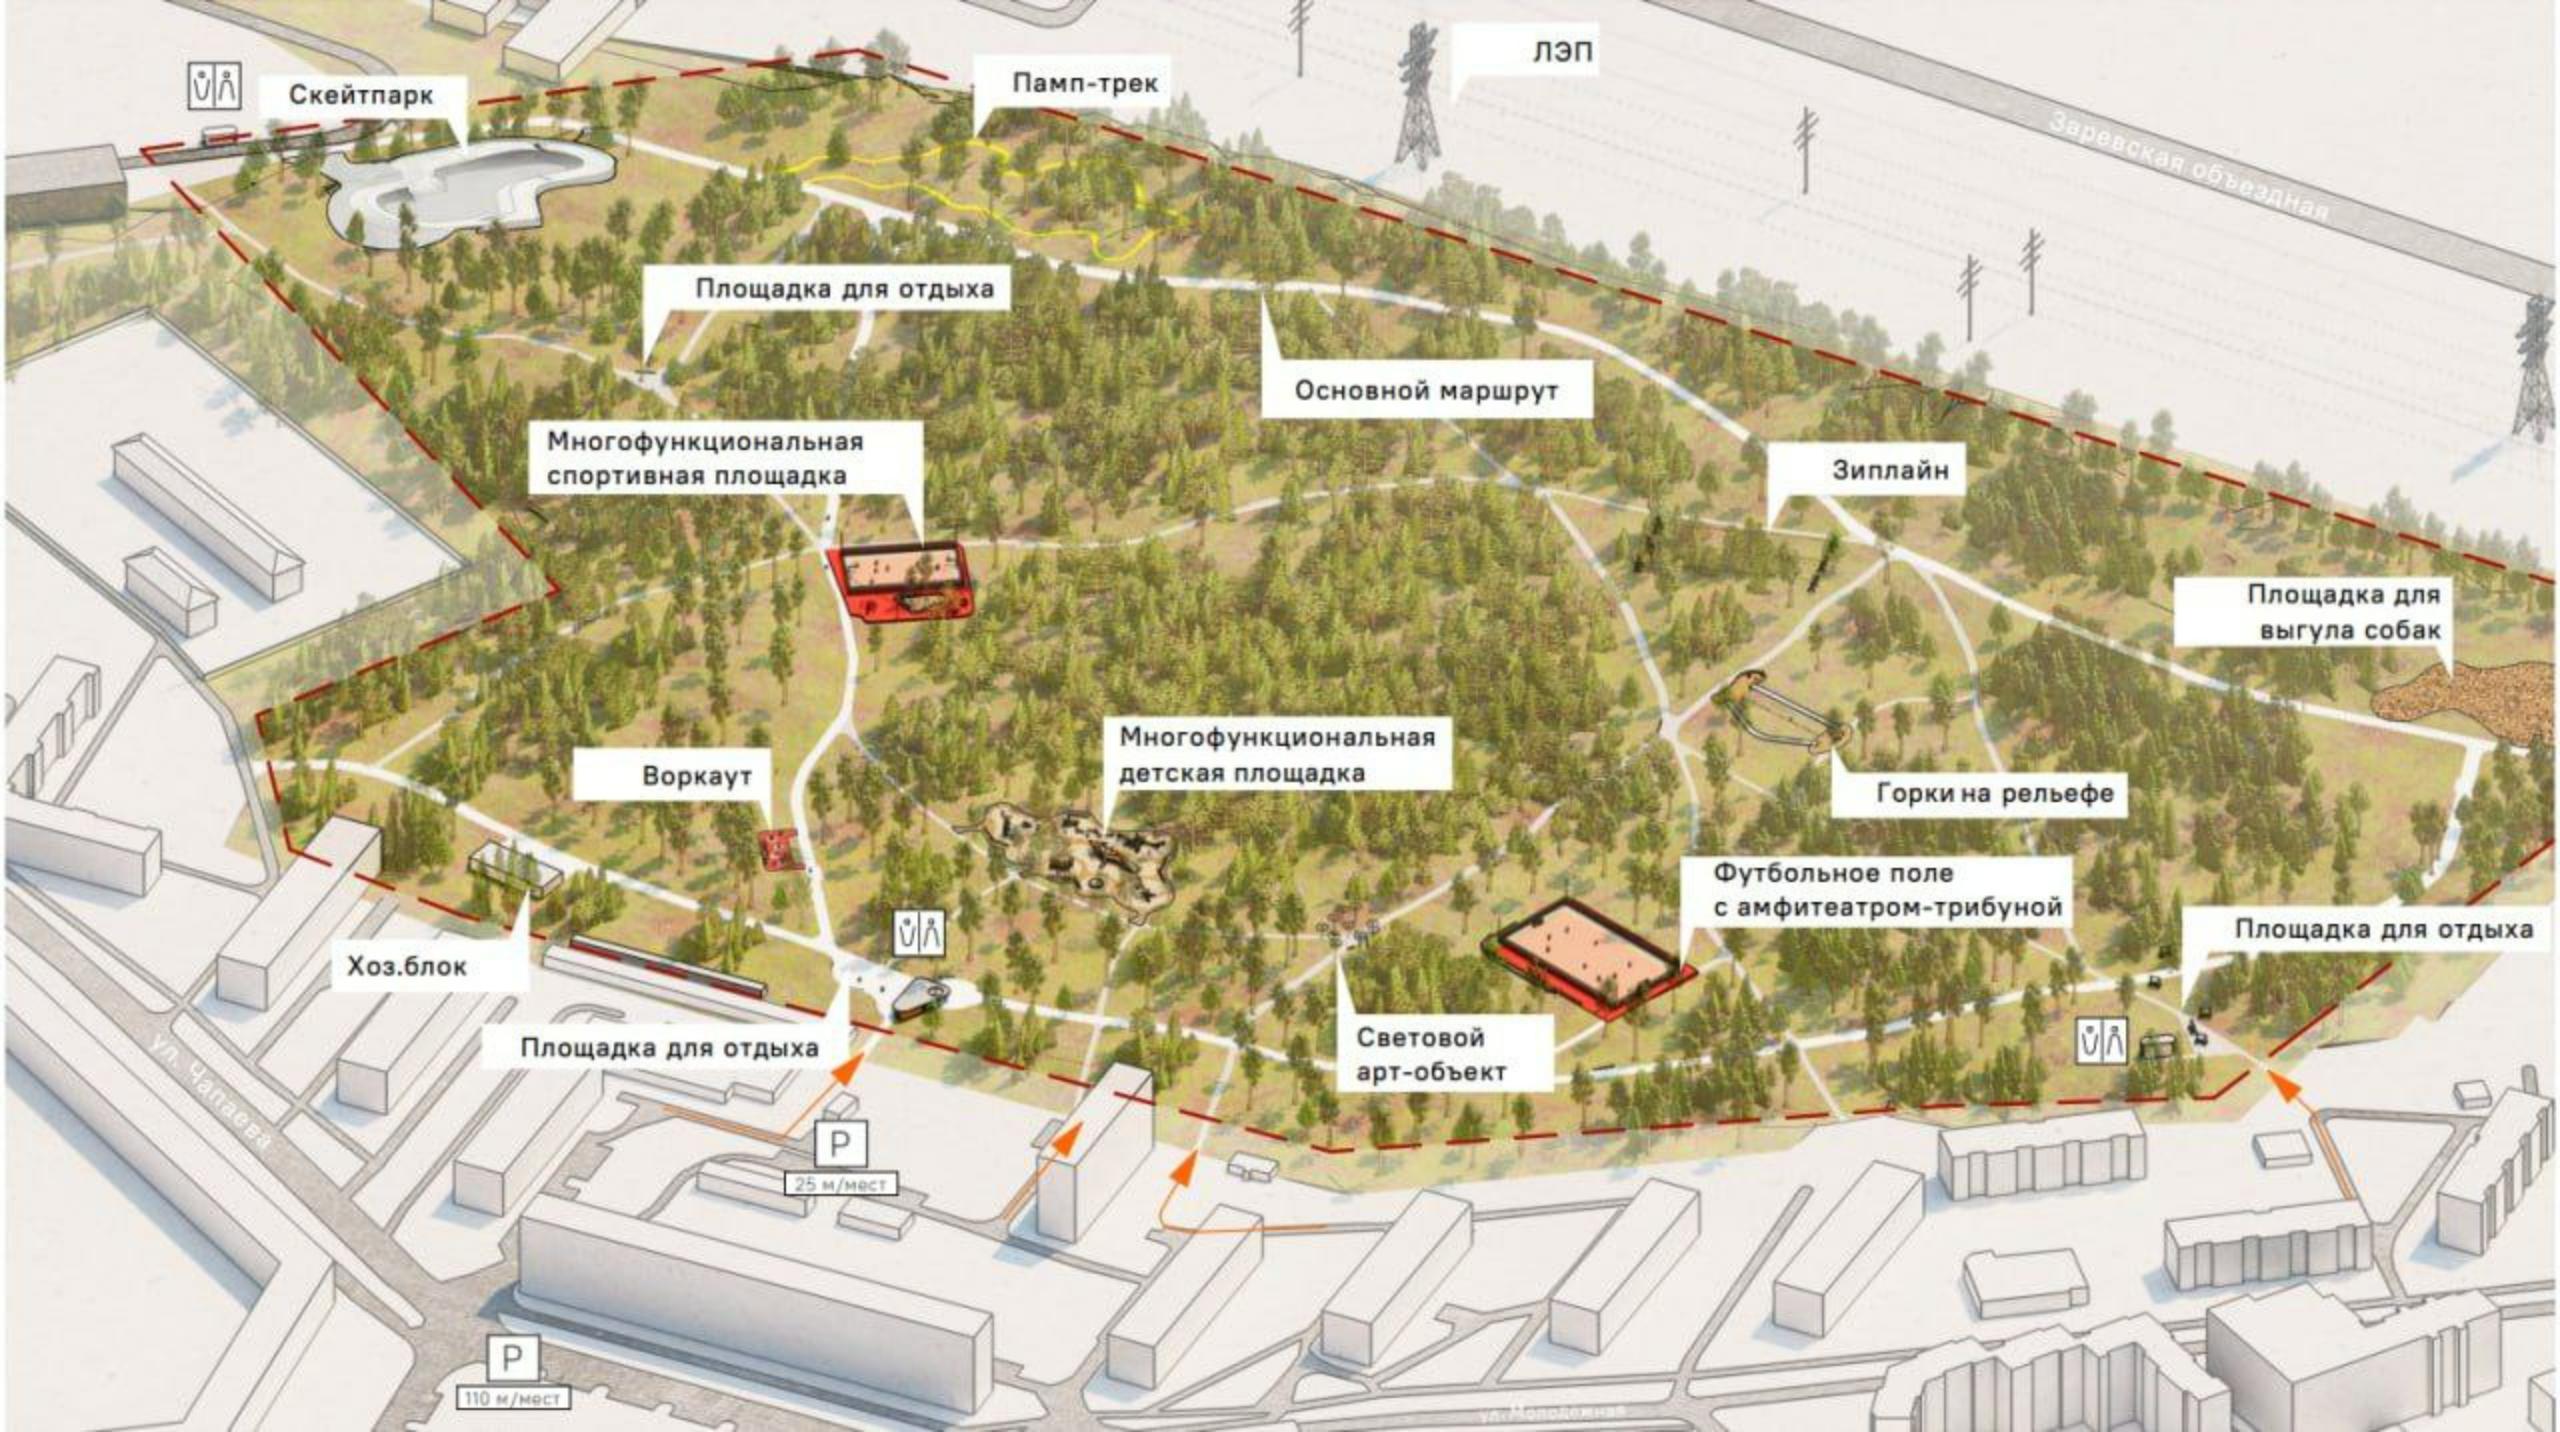 Три спортплощадки обустроят в дзержинском парке по проекту «Формирование комфортной городской среды» нацпроекта «Жилье и городская среда»